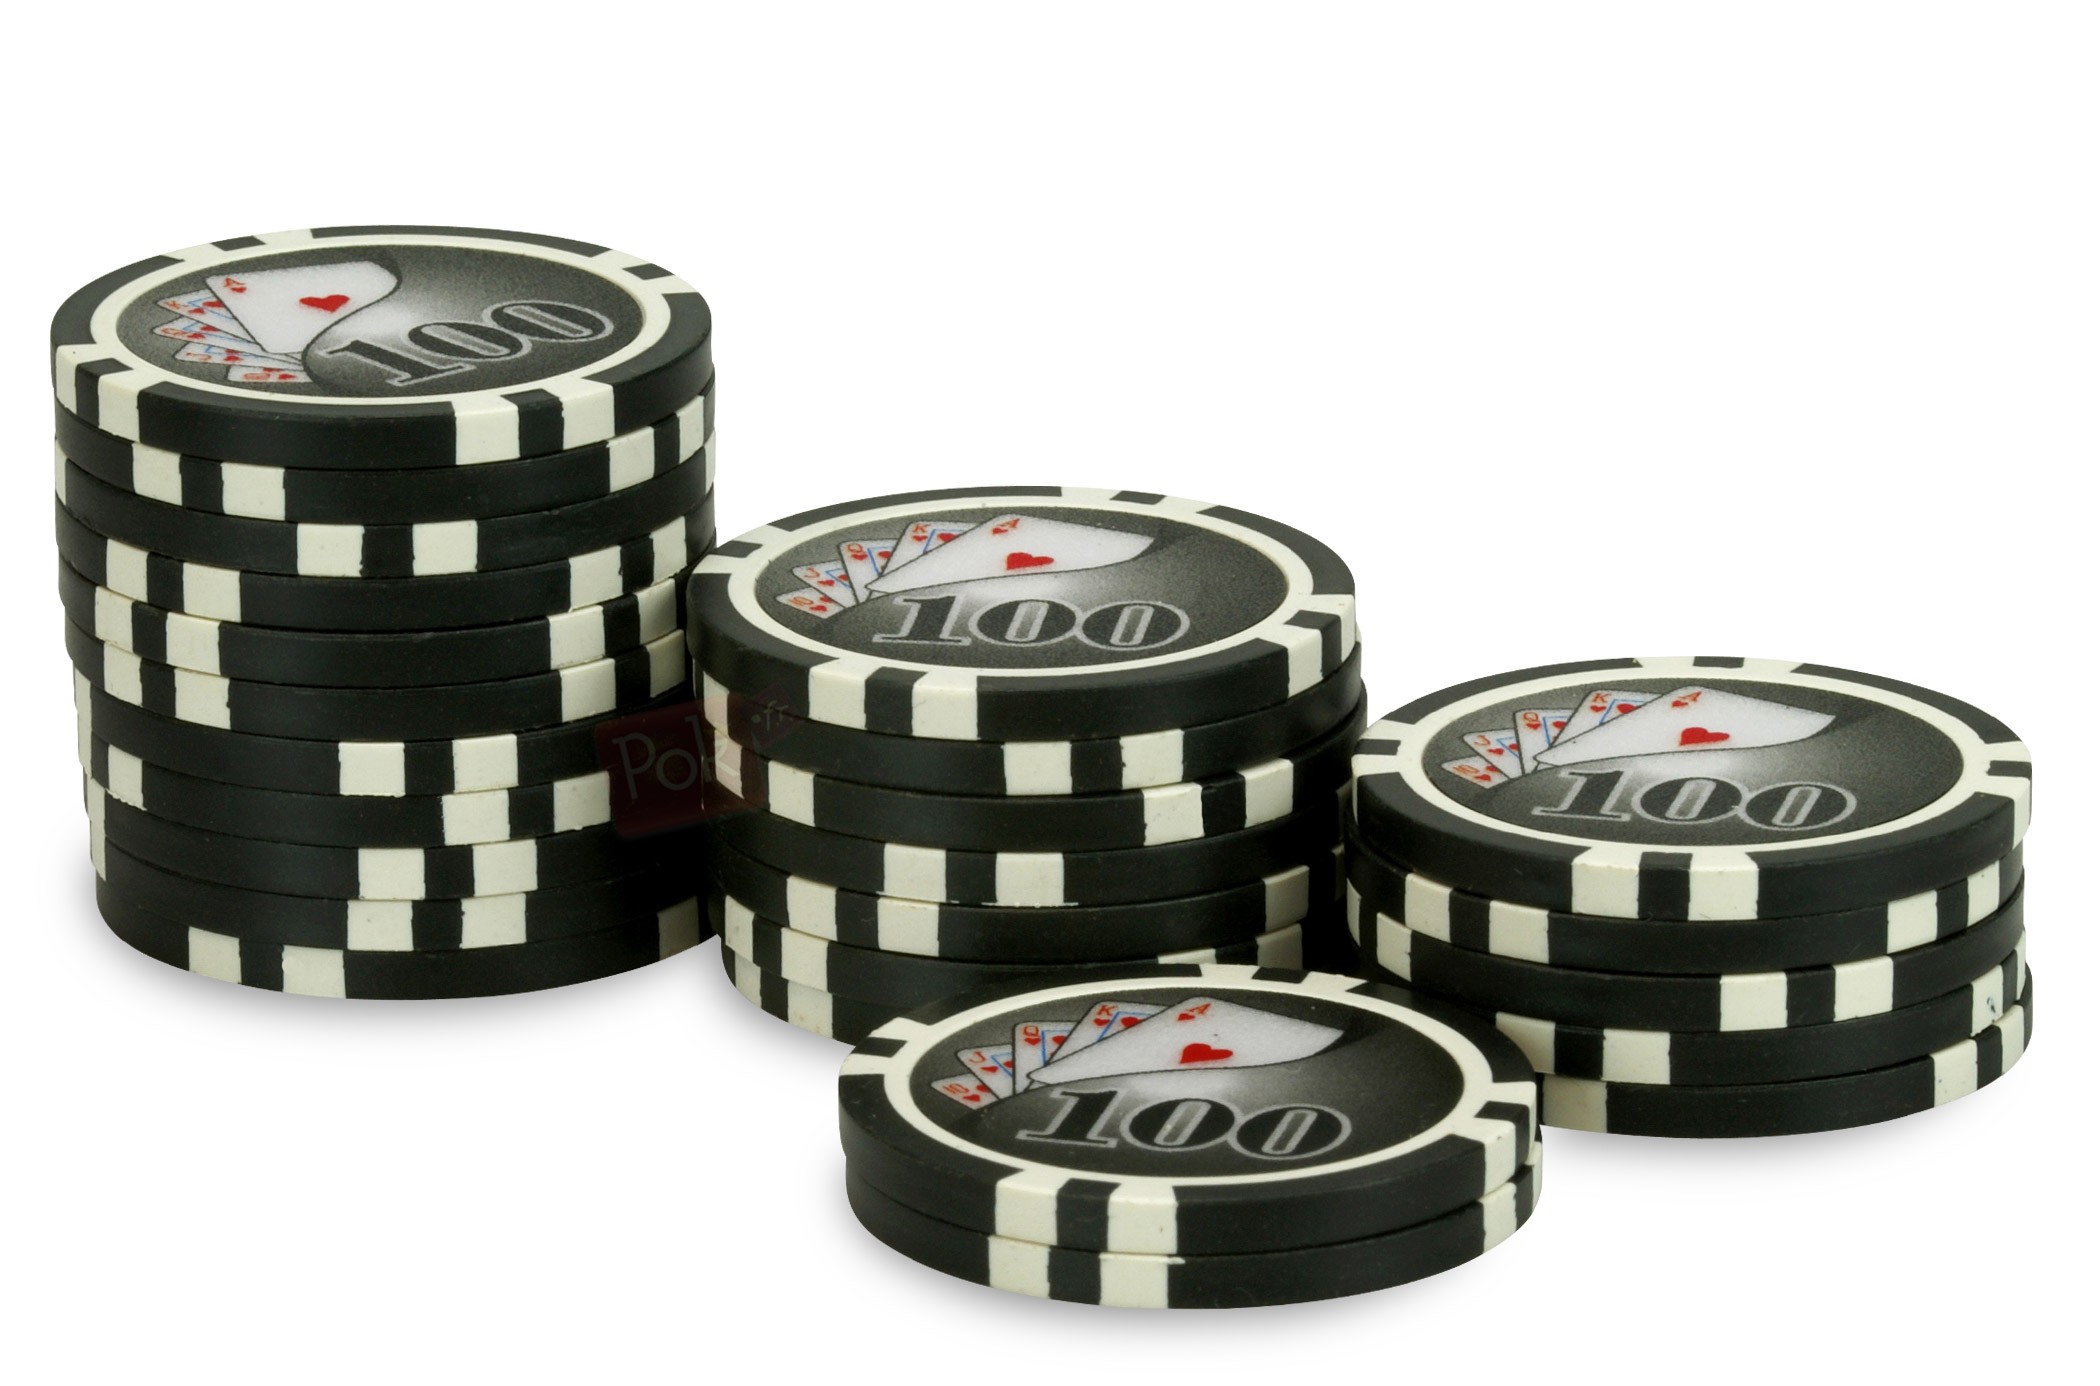 Recharges de 25 jetons de poker Suited